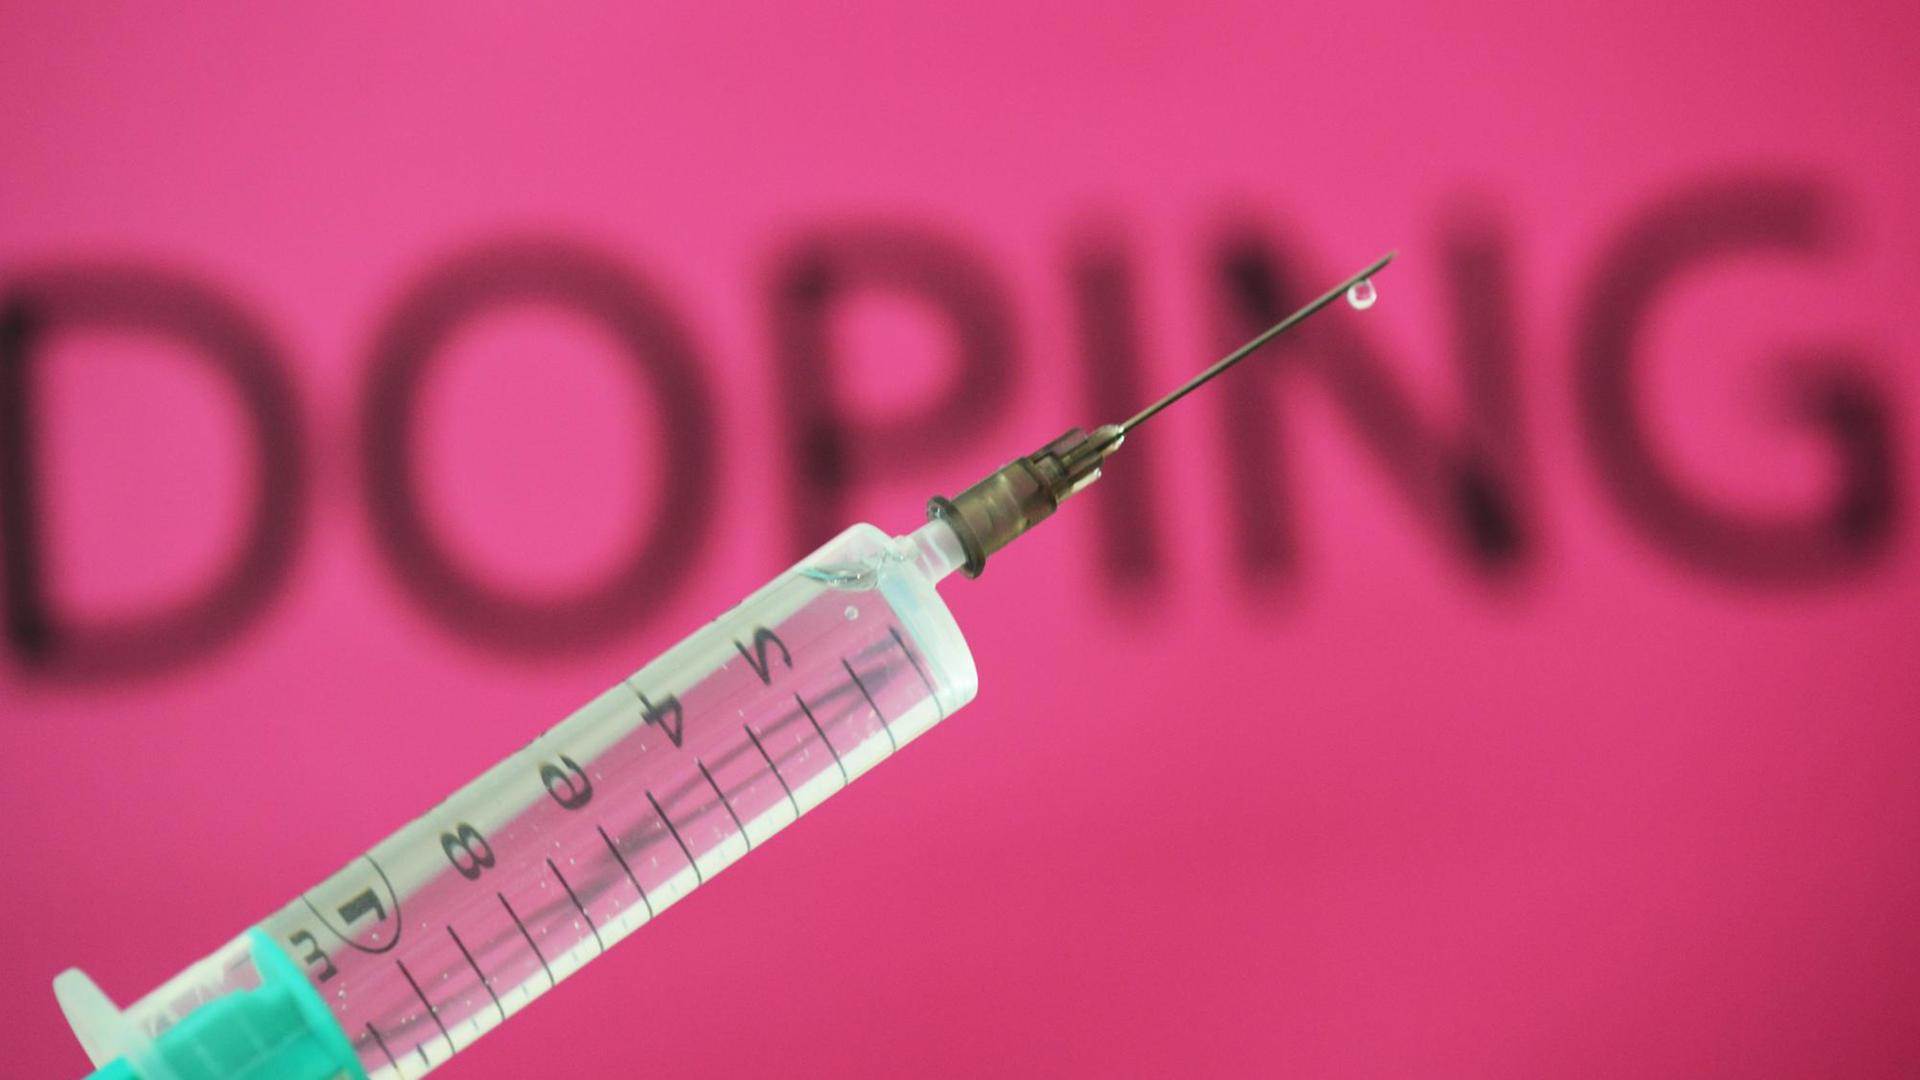 Eine Spritze ist vor dem Wort "Doping" zu sehen. Illustration